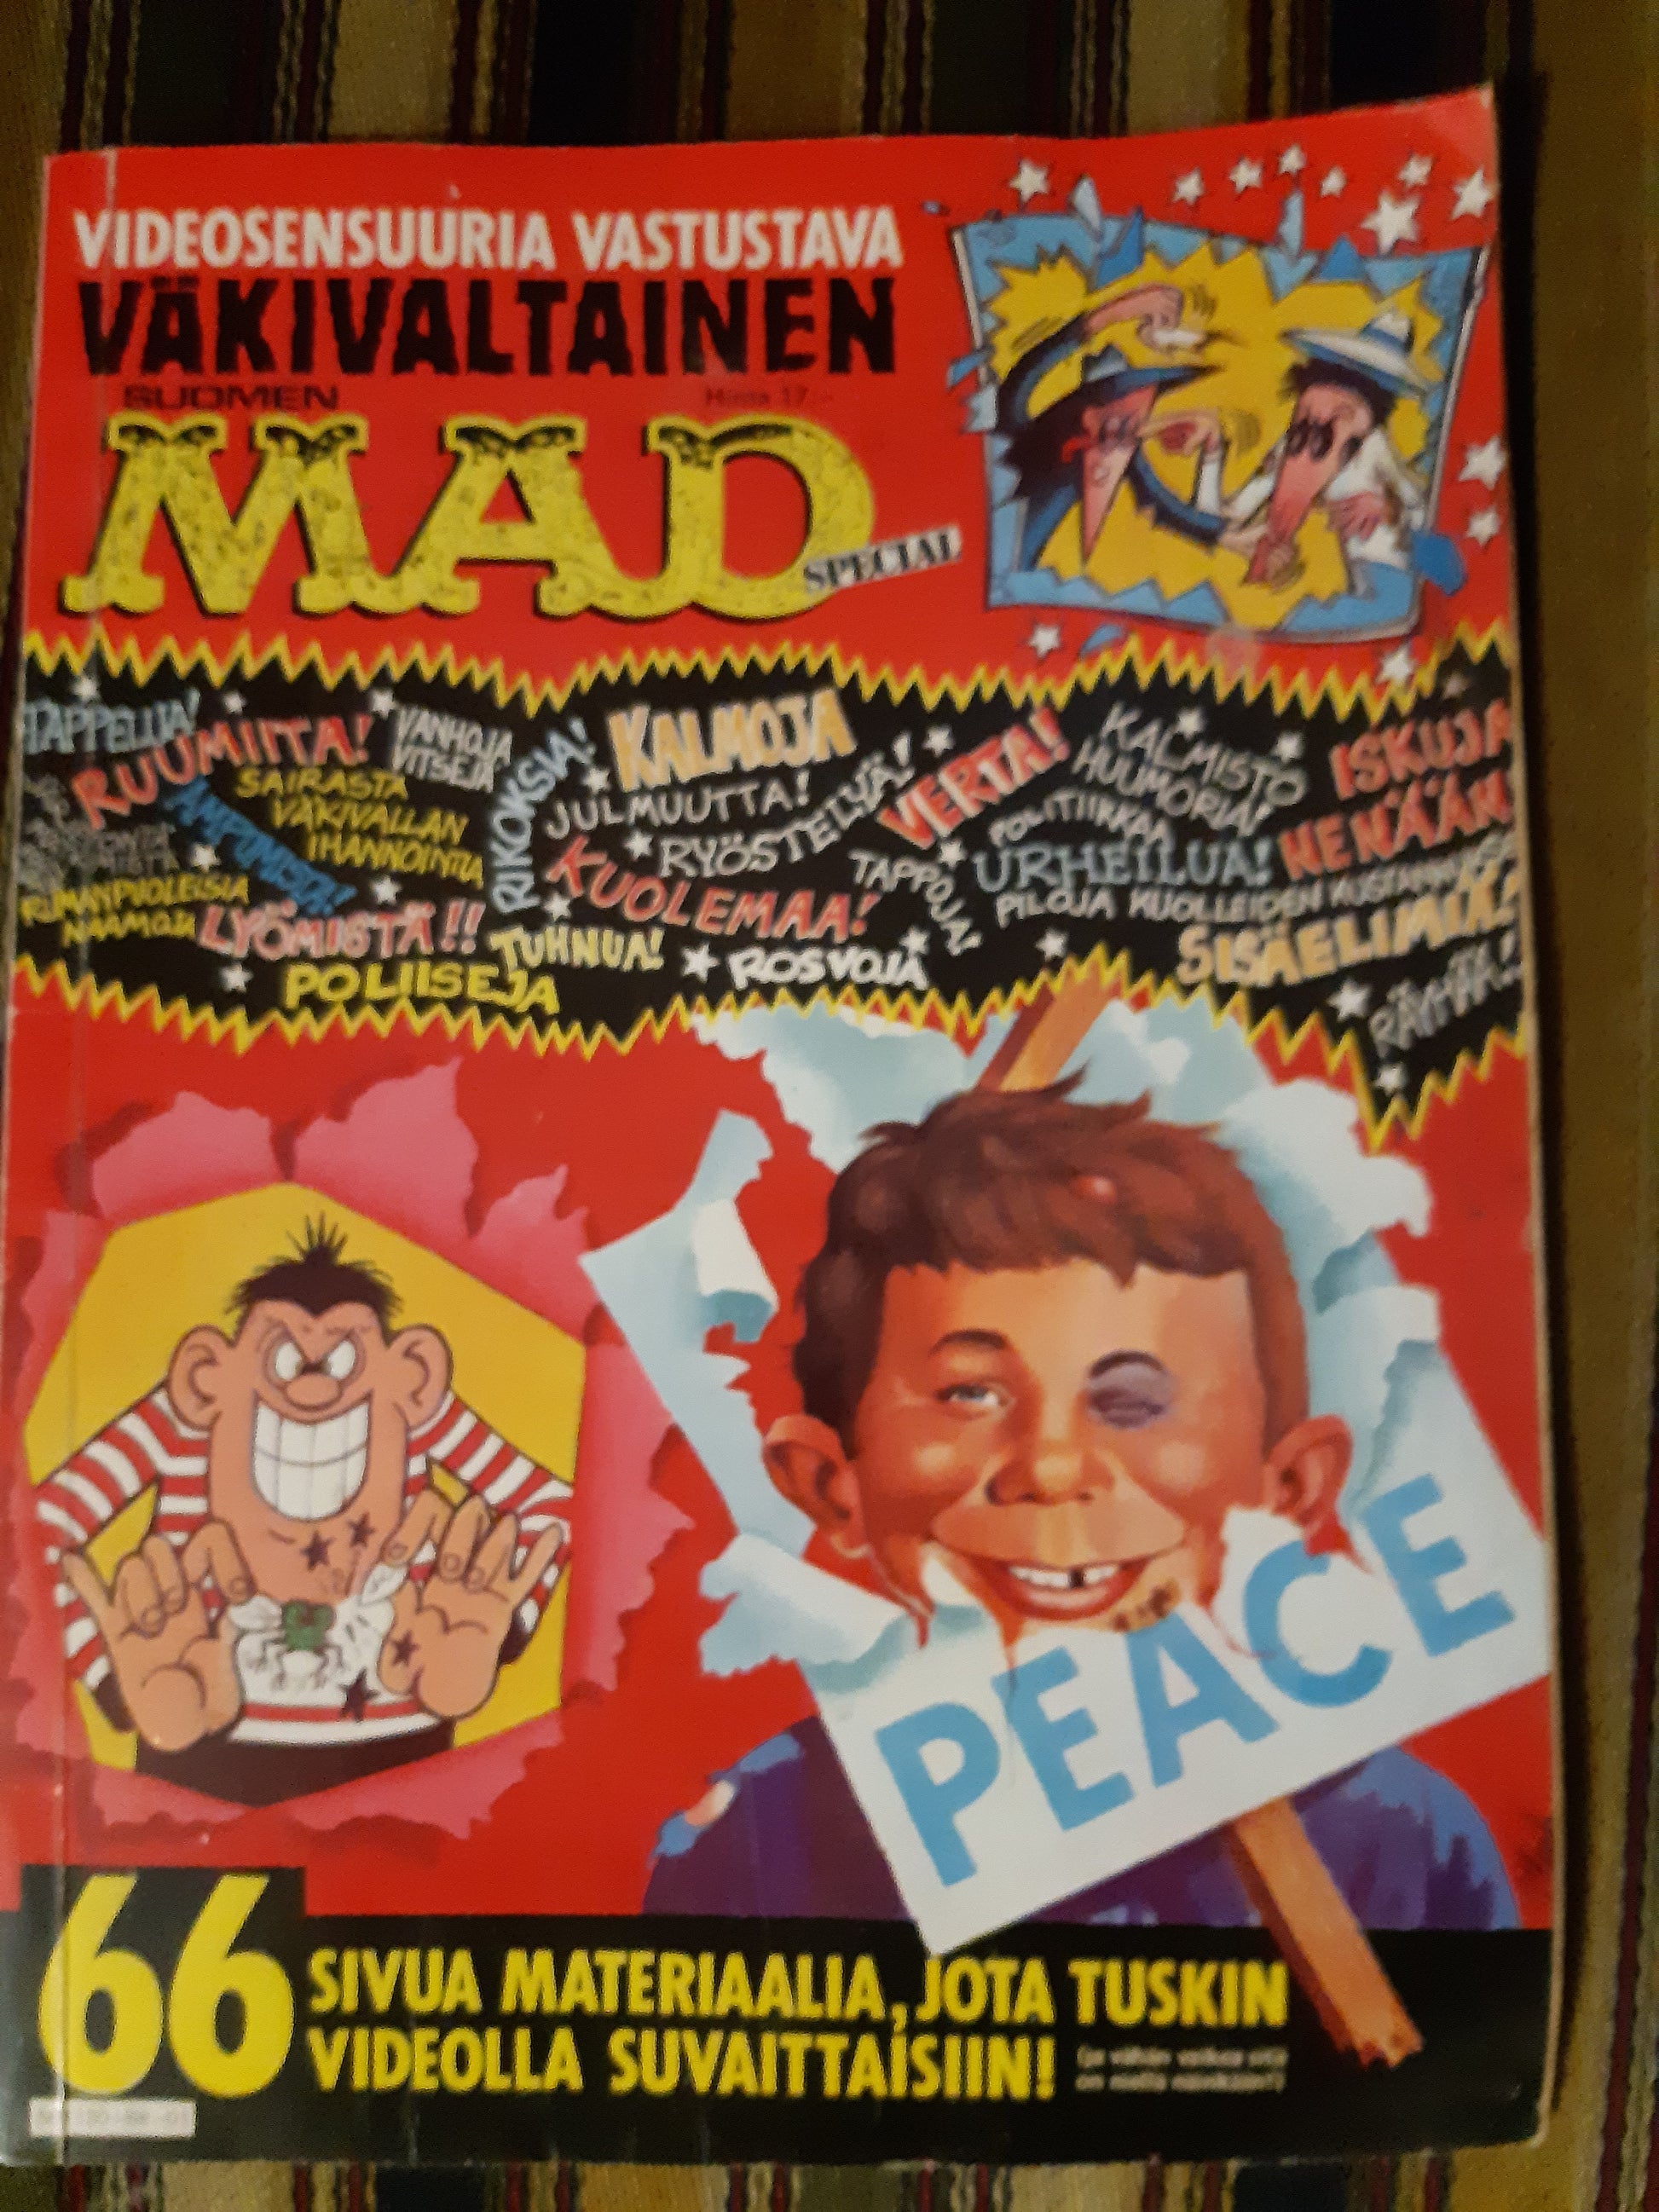 videosensuuria vastustava väkivaltainen suomen mad - 1988